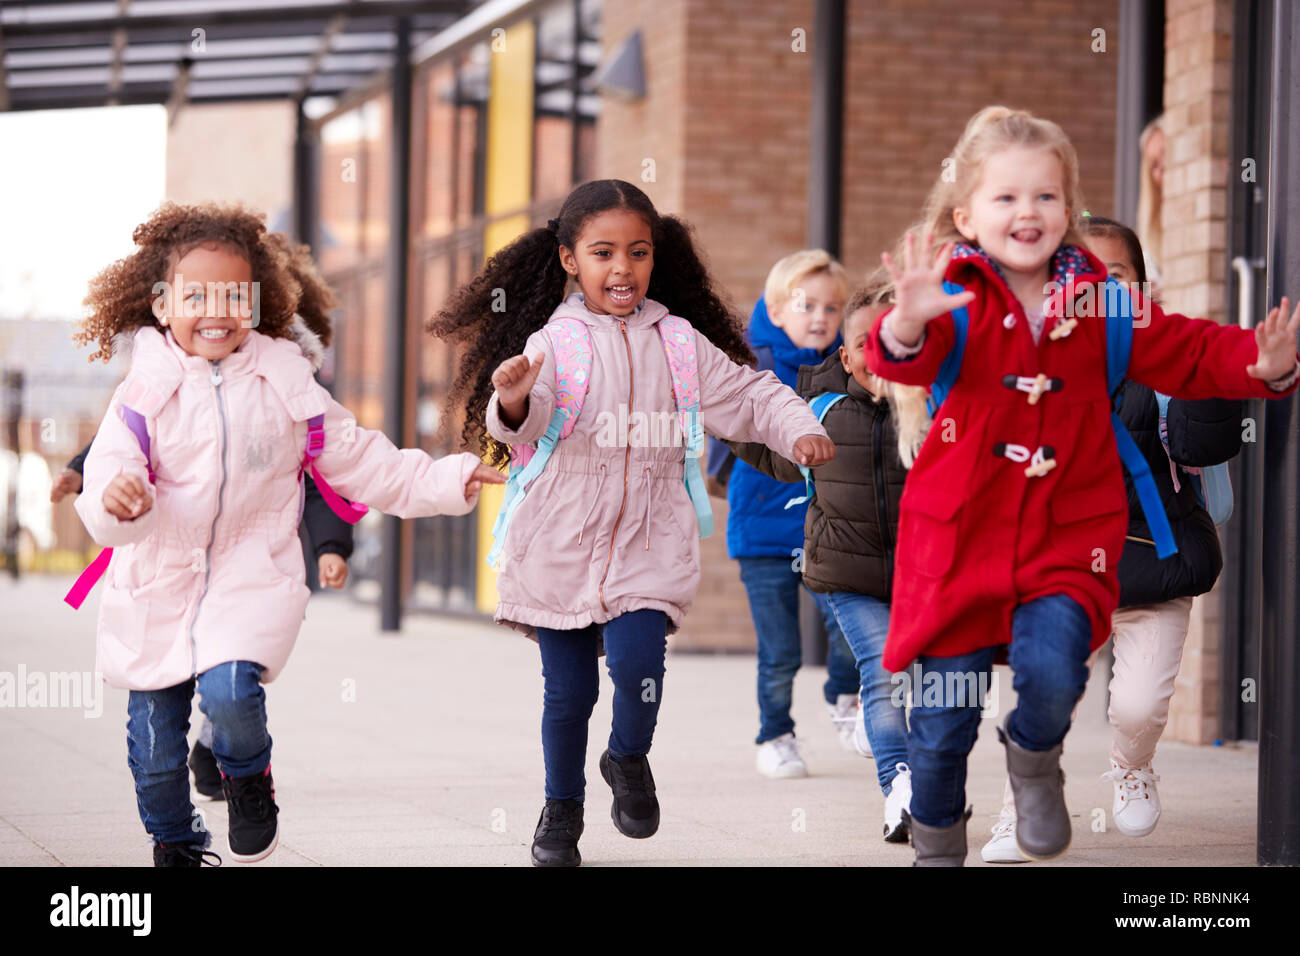 Drei glückliche junge Mädchen Mäntel tragen und tragen Schulmappen in einen Gehweg mit ihren Klassenkameraden außerhalb ihres Säuglings Schule Gebäude läuft, in der Nähe Stockfoto